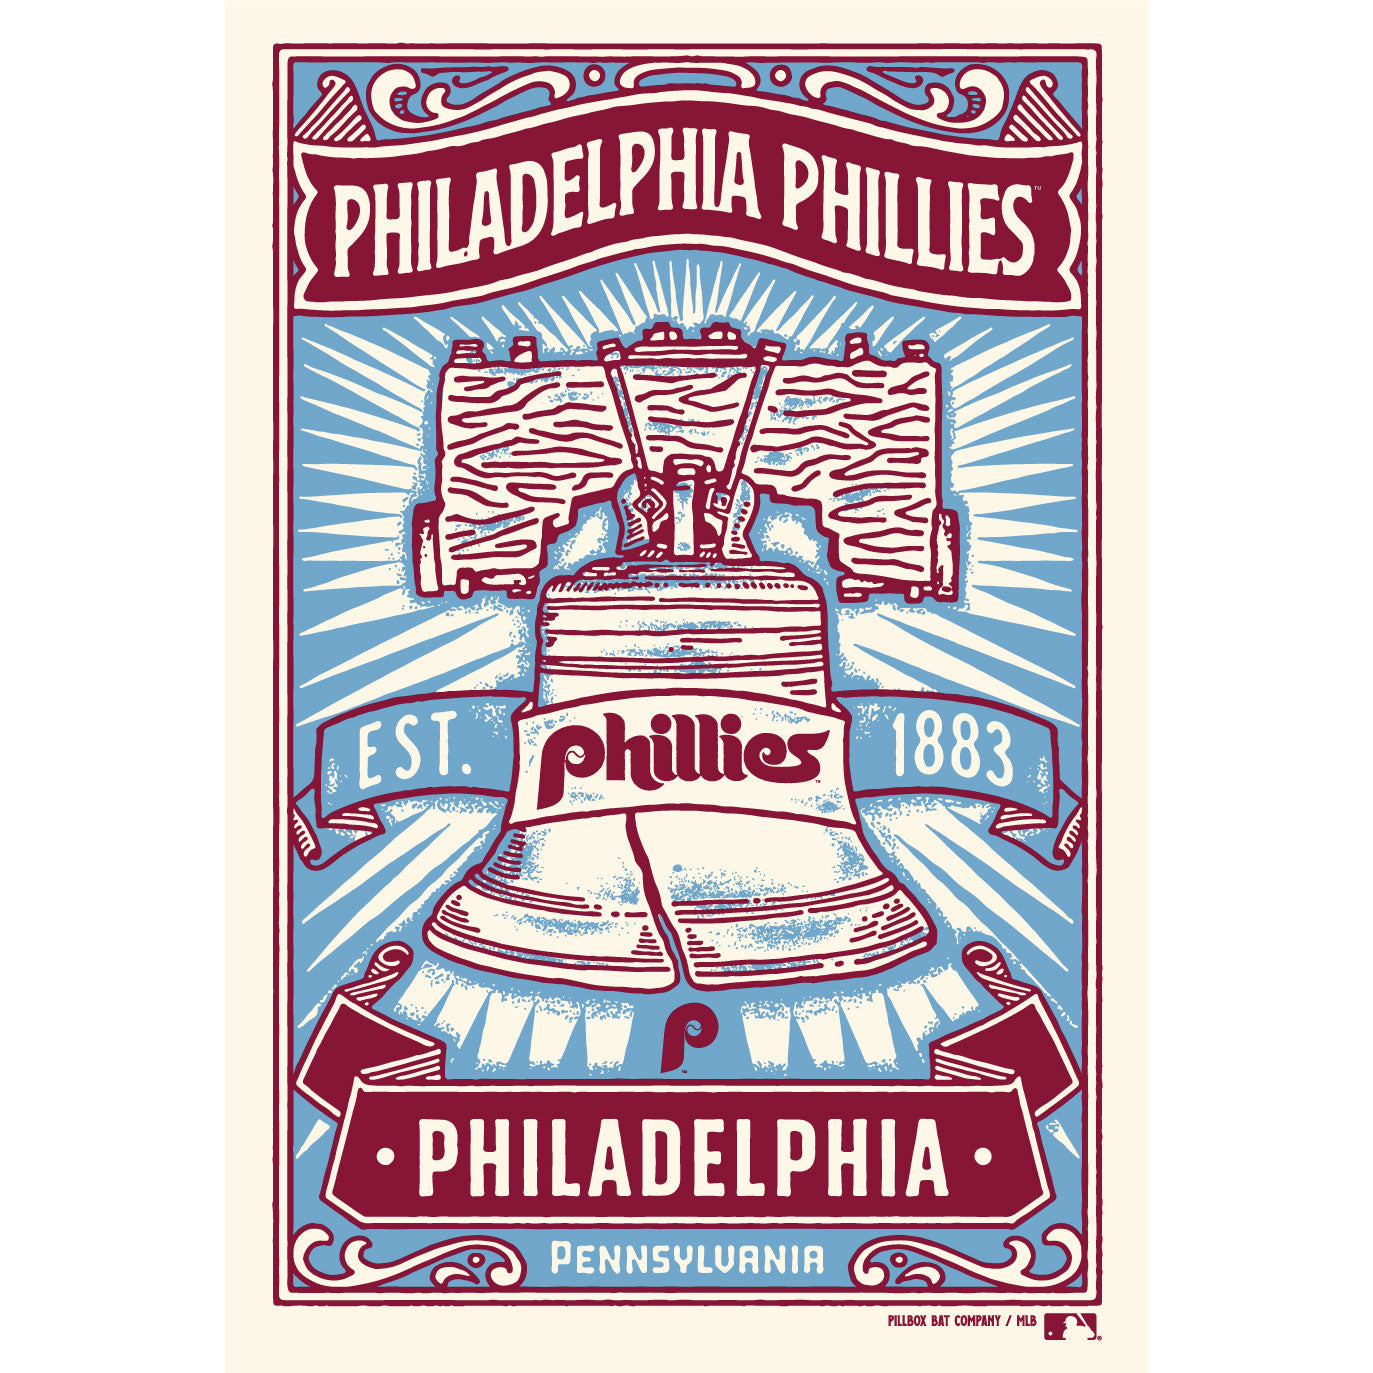 Philadelphia Phillies Official MLB Baseball Team Logo POSTER - LAST ONE!